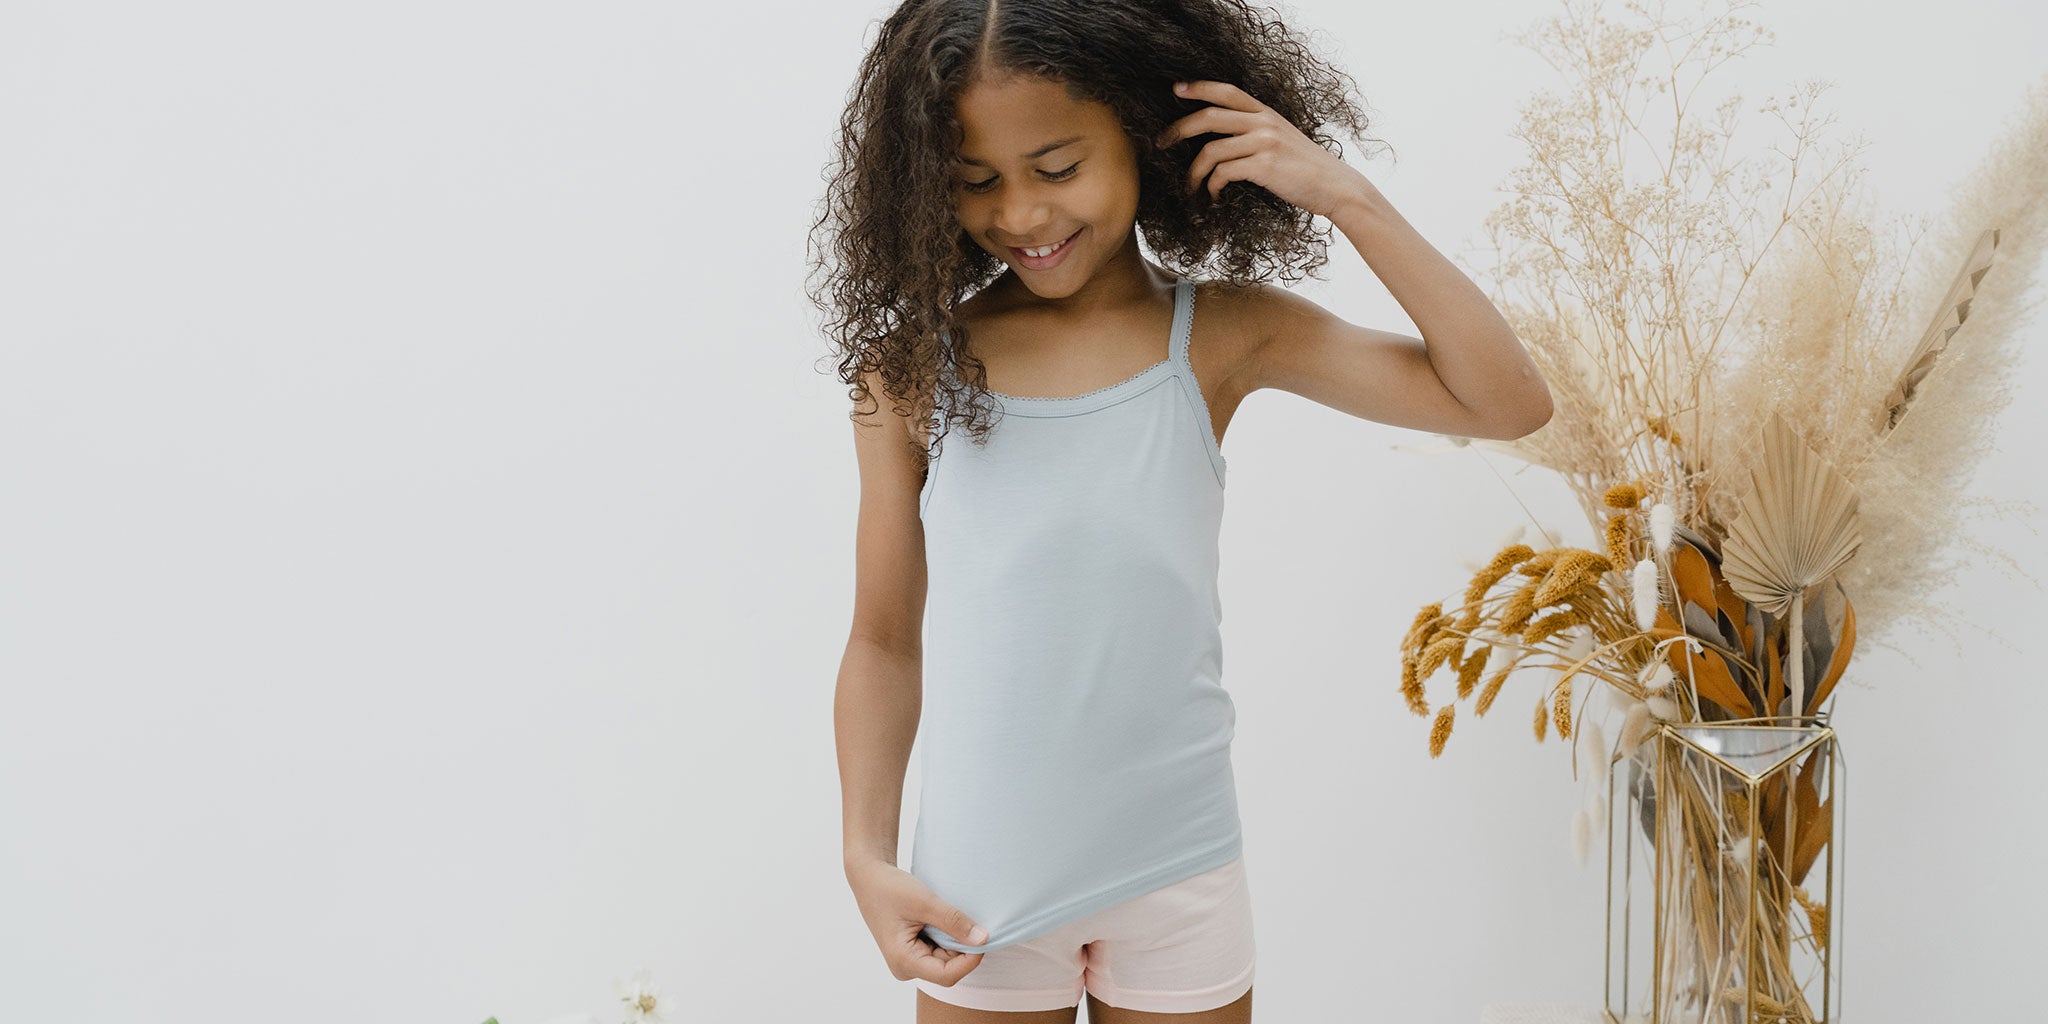  Little Girls Underwear: underwear and accessories